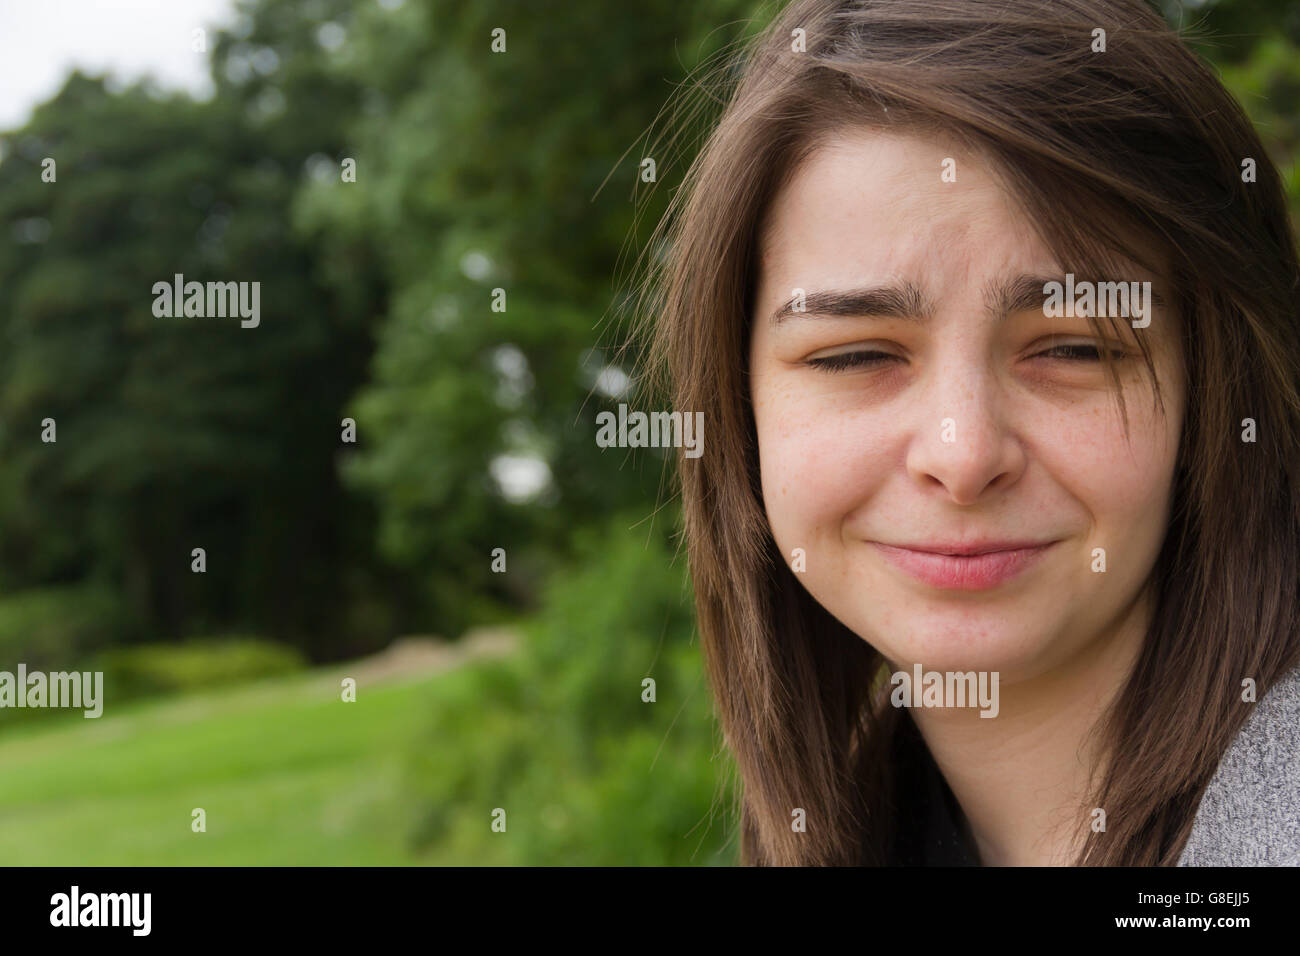 Junge Frau, Erwachsene oder späten Teens, sitzen im Park mit einem Ungläubigen oder Zweifeln Ausdruck auf ihrem Gesicht. Stockfoto